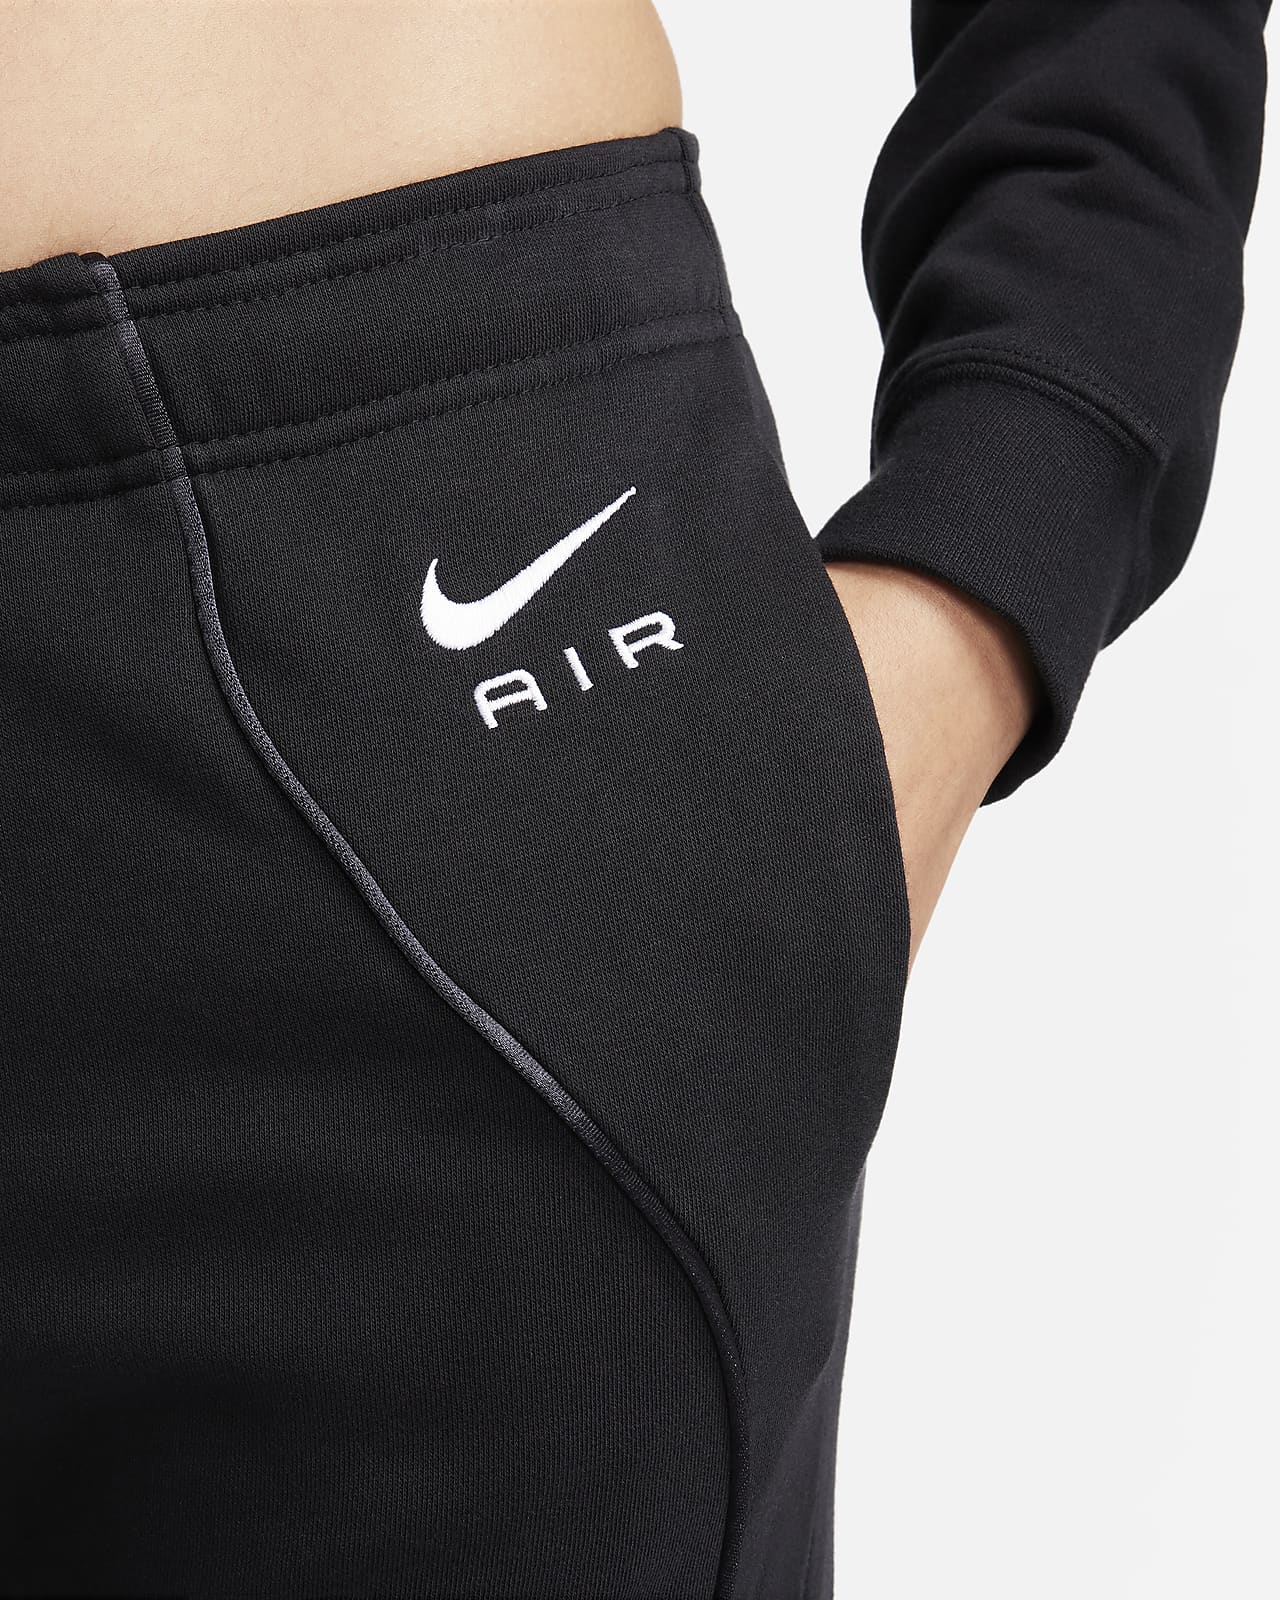 Survêtement taille mi-haute en tissu Fleece Nike Air pour Femme